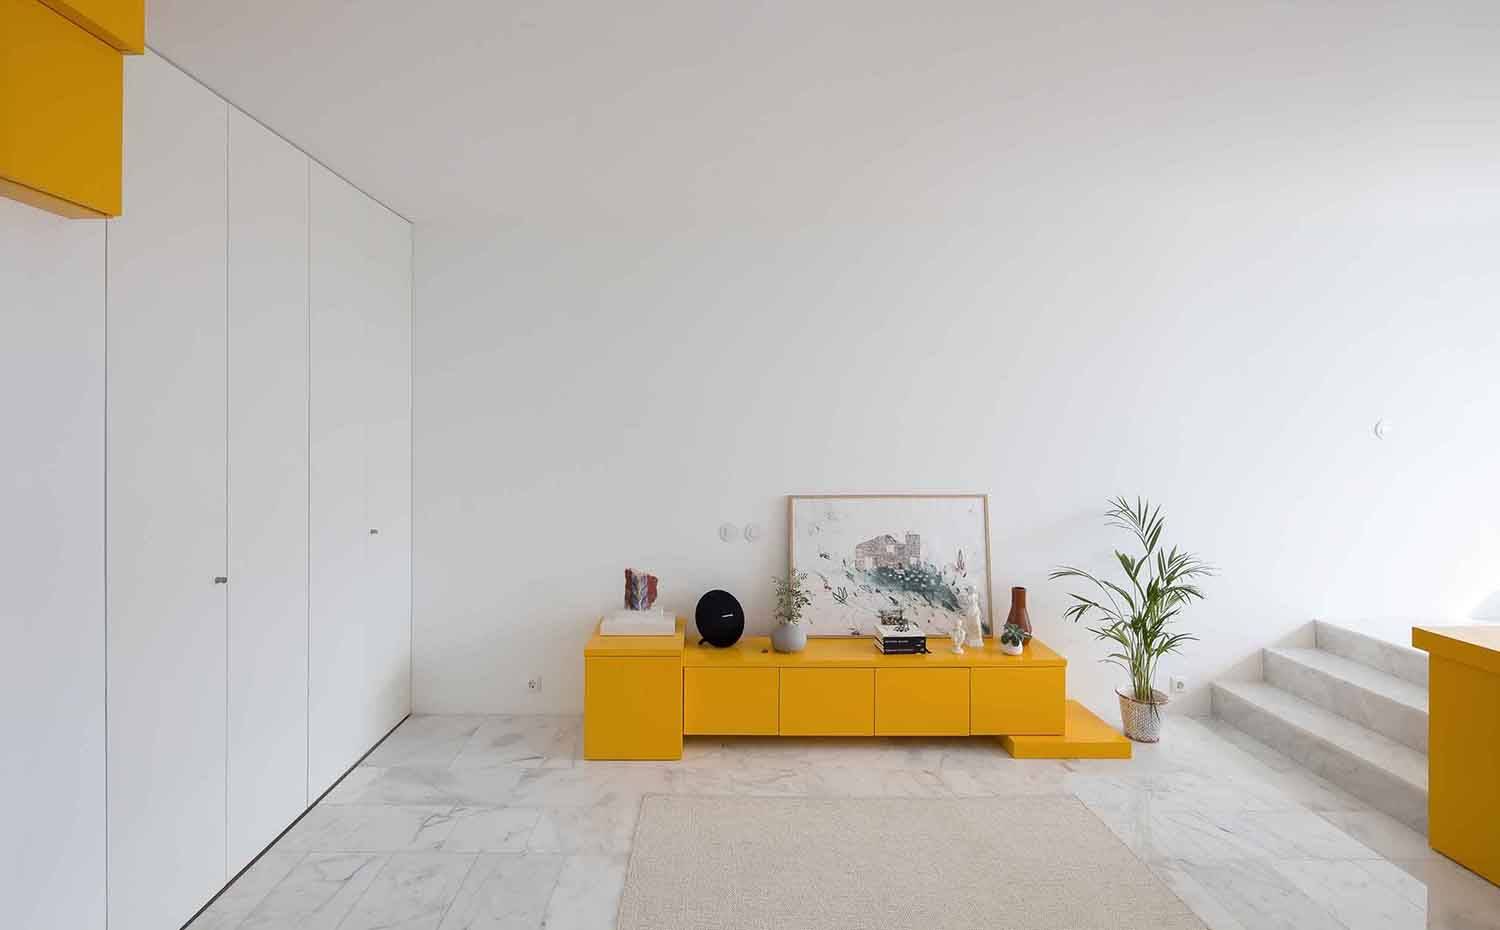 Mueble bajo amarillo sala de estar, armarios integrados, pavimento de mármol. Un mueble bajo de un intenso llamativo color focaliza la atención en la sala de estar donde se impone la austeridad. Junto a este, se oculta la zona de cocina tras paneles plegables que van de suelo a techo. 